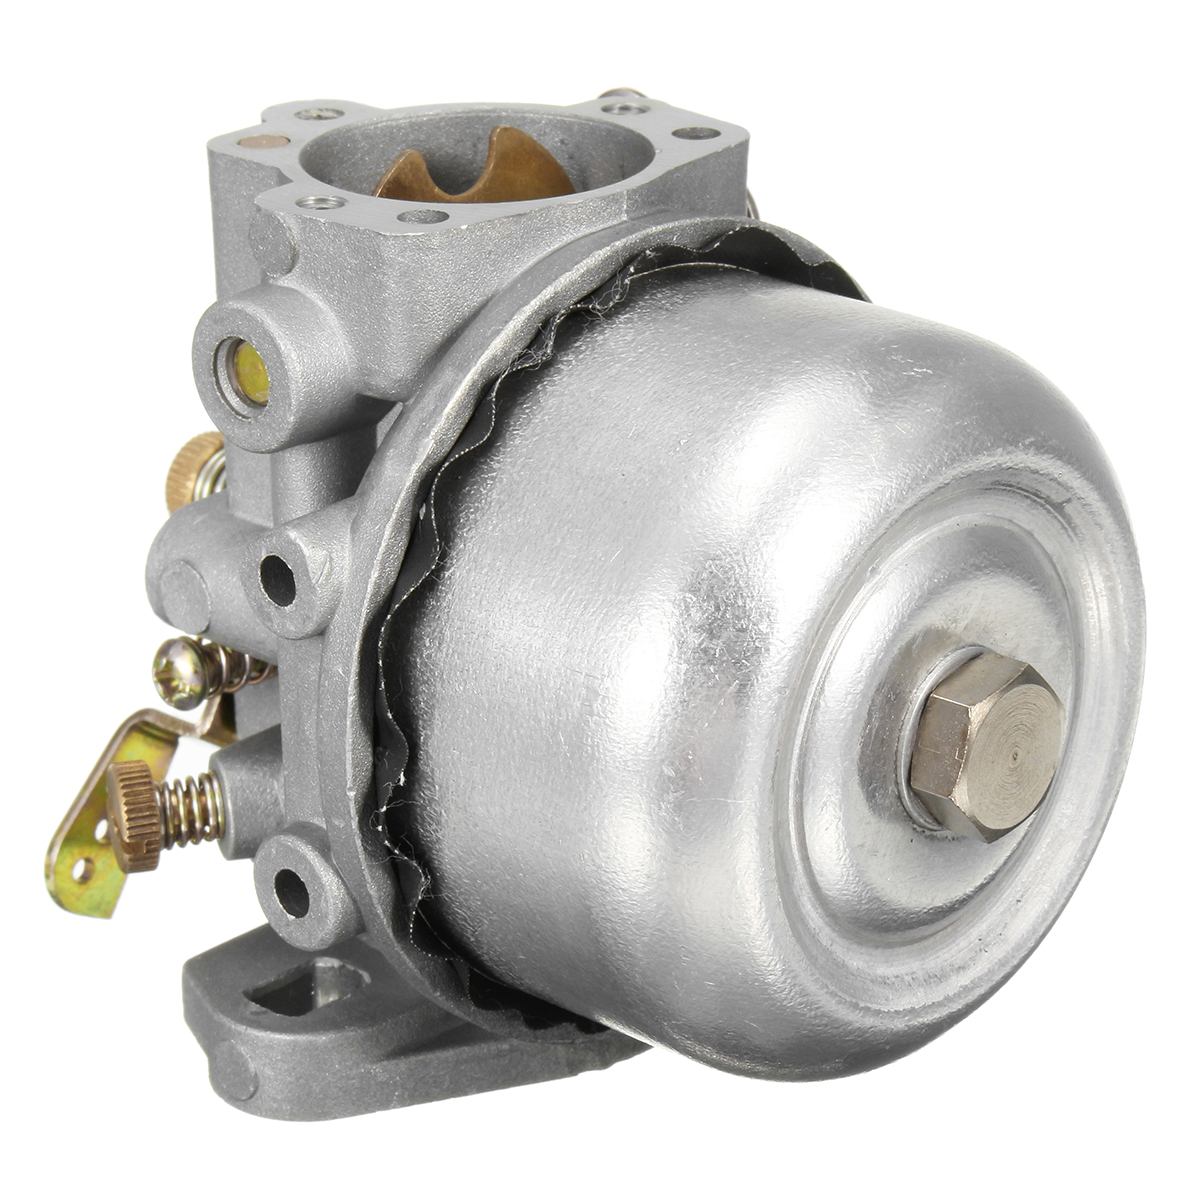 Kohler Engine Motor Carb Carburetor Fits for K90 K91 K141 K160 K161 K181 Engines